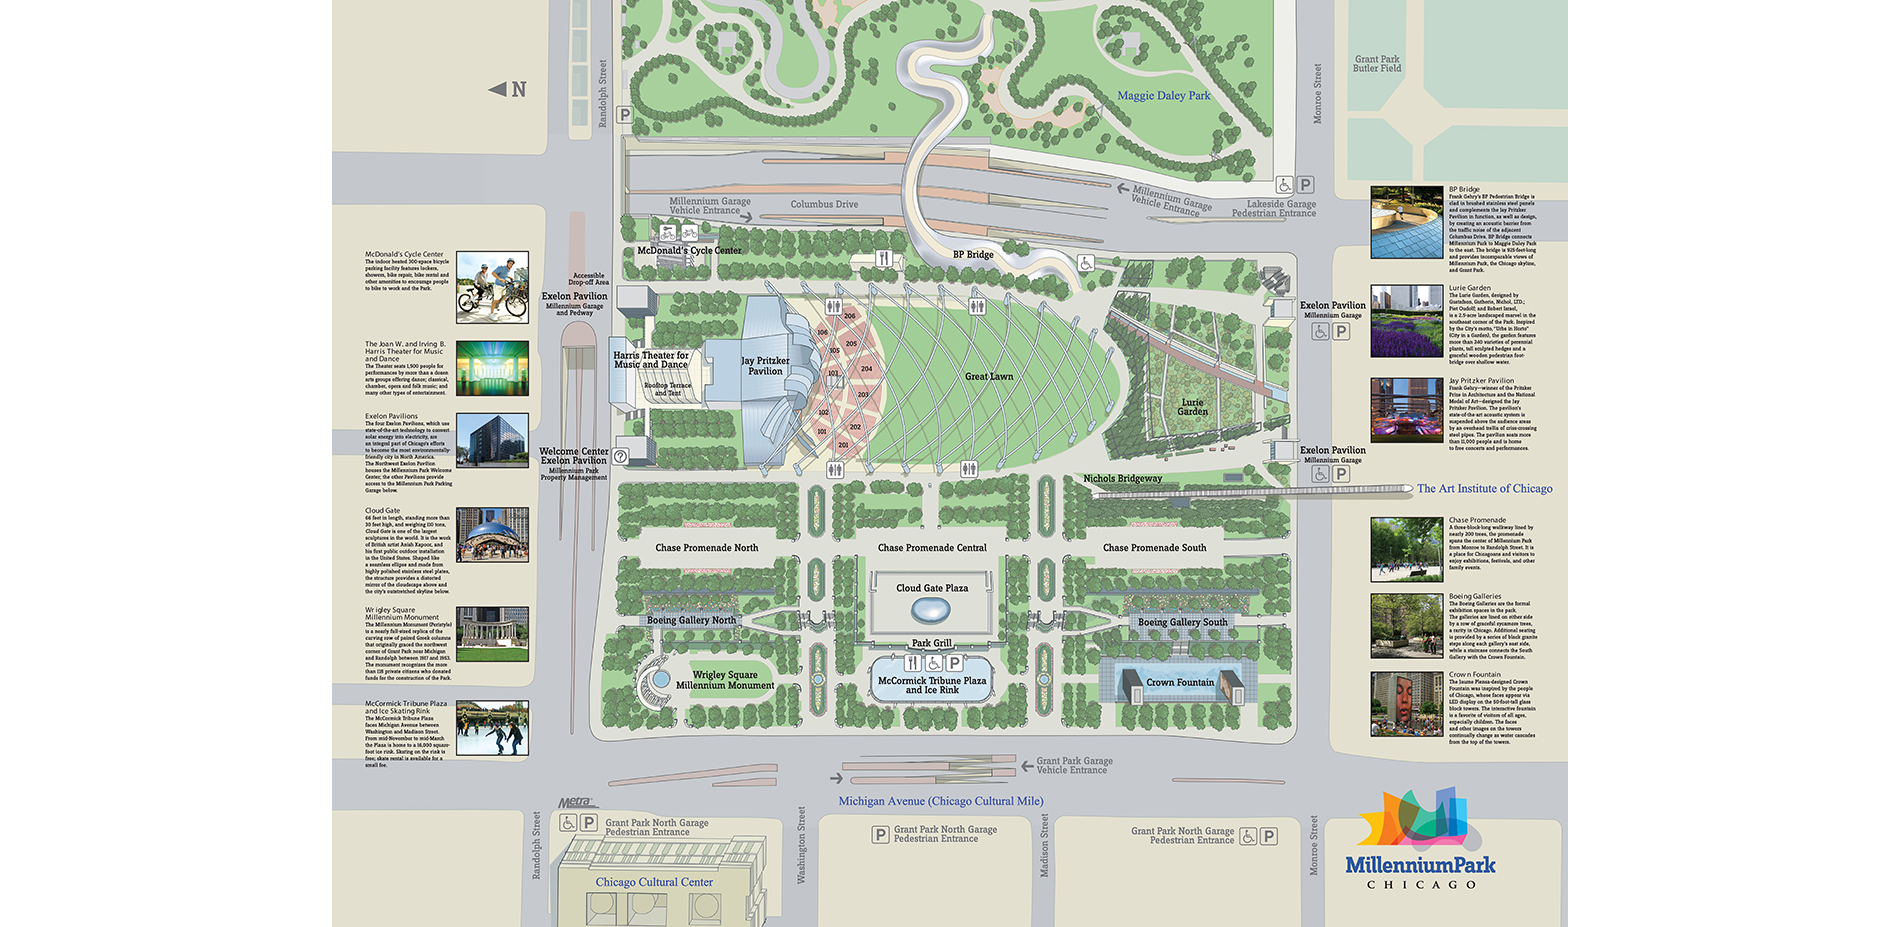 Millennium Park Site Plan